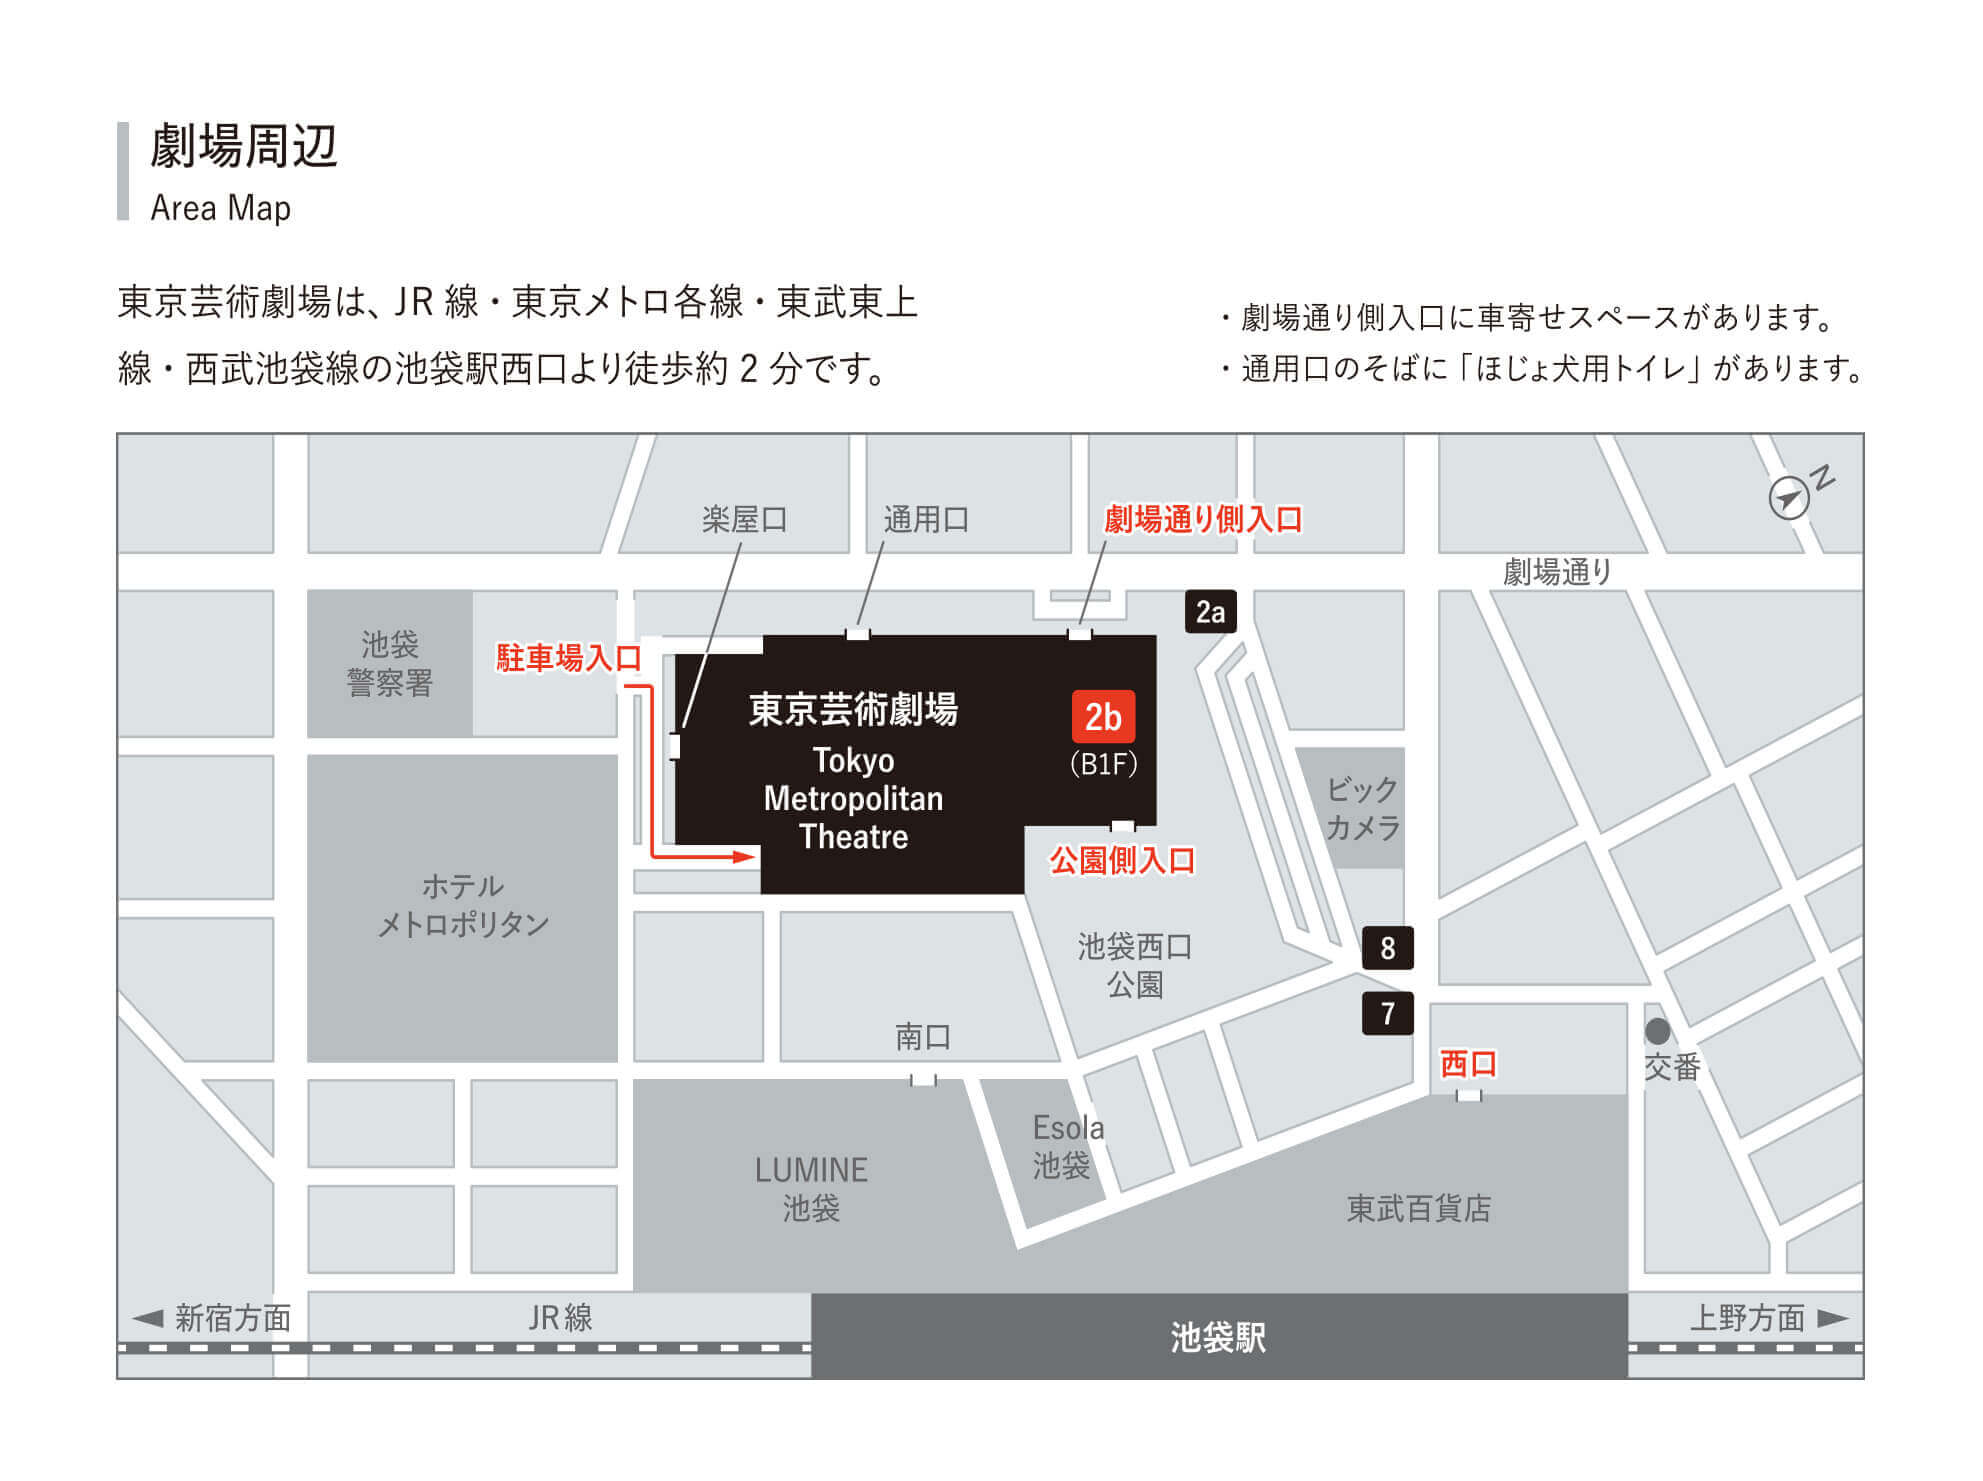 東京芸術劇場周辺マップです